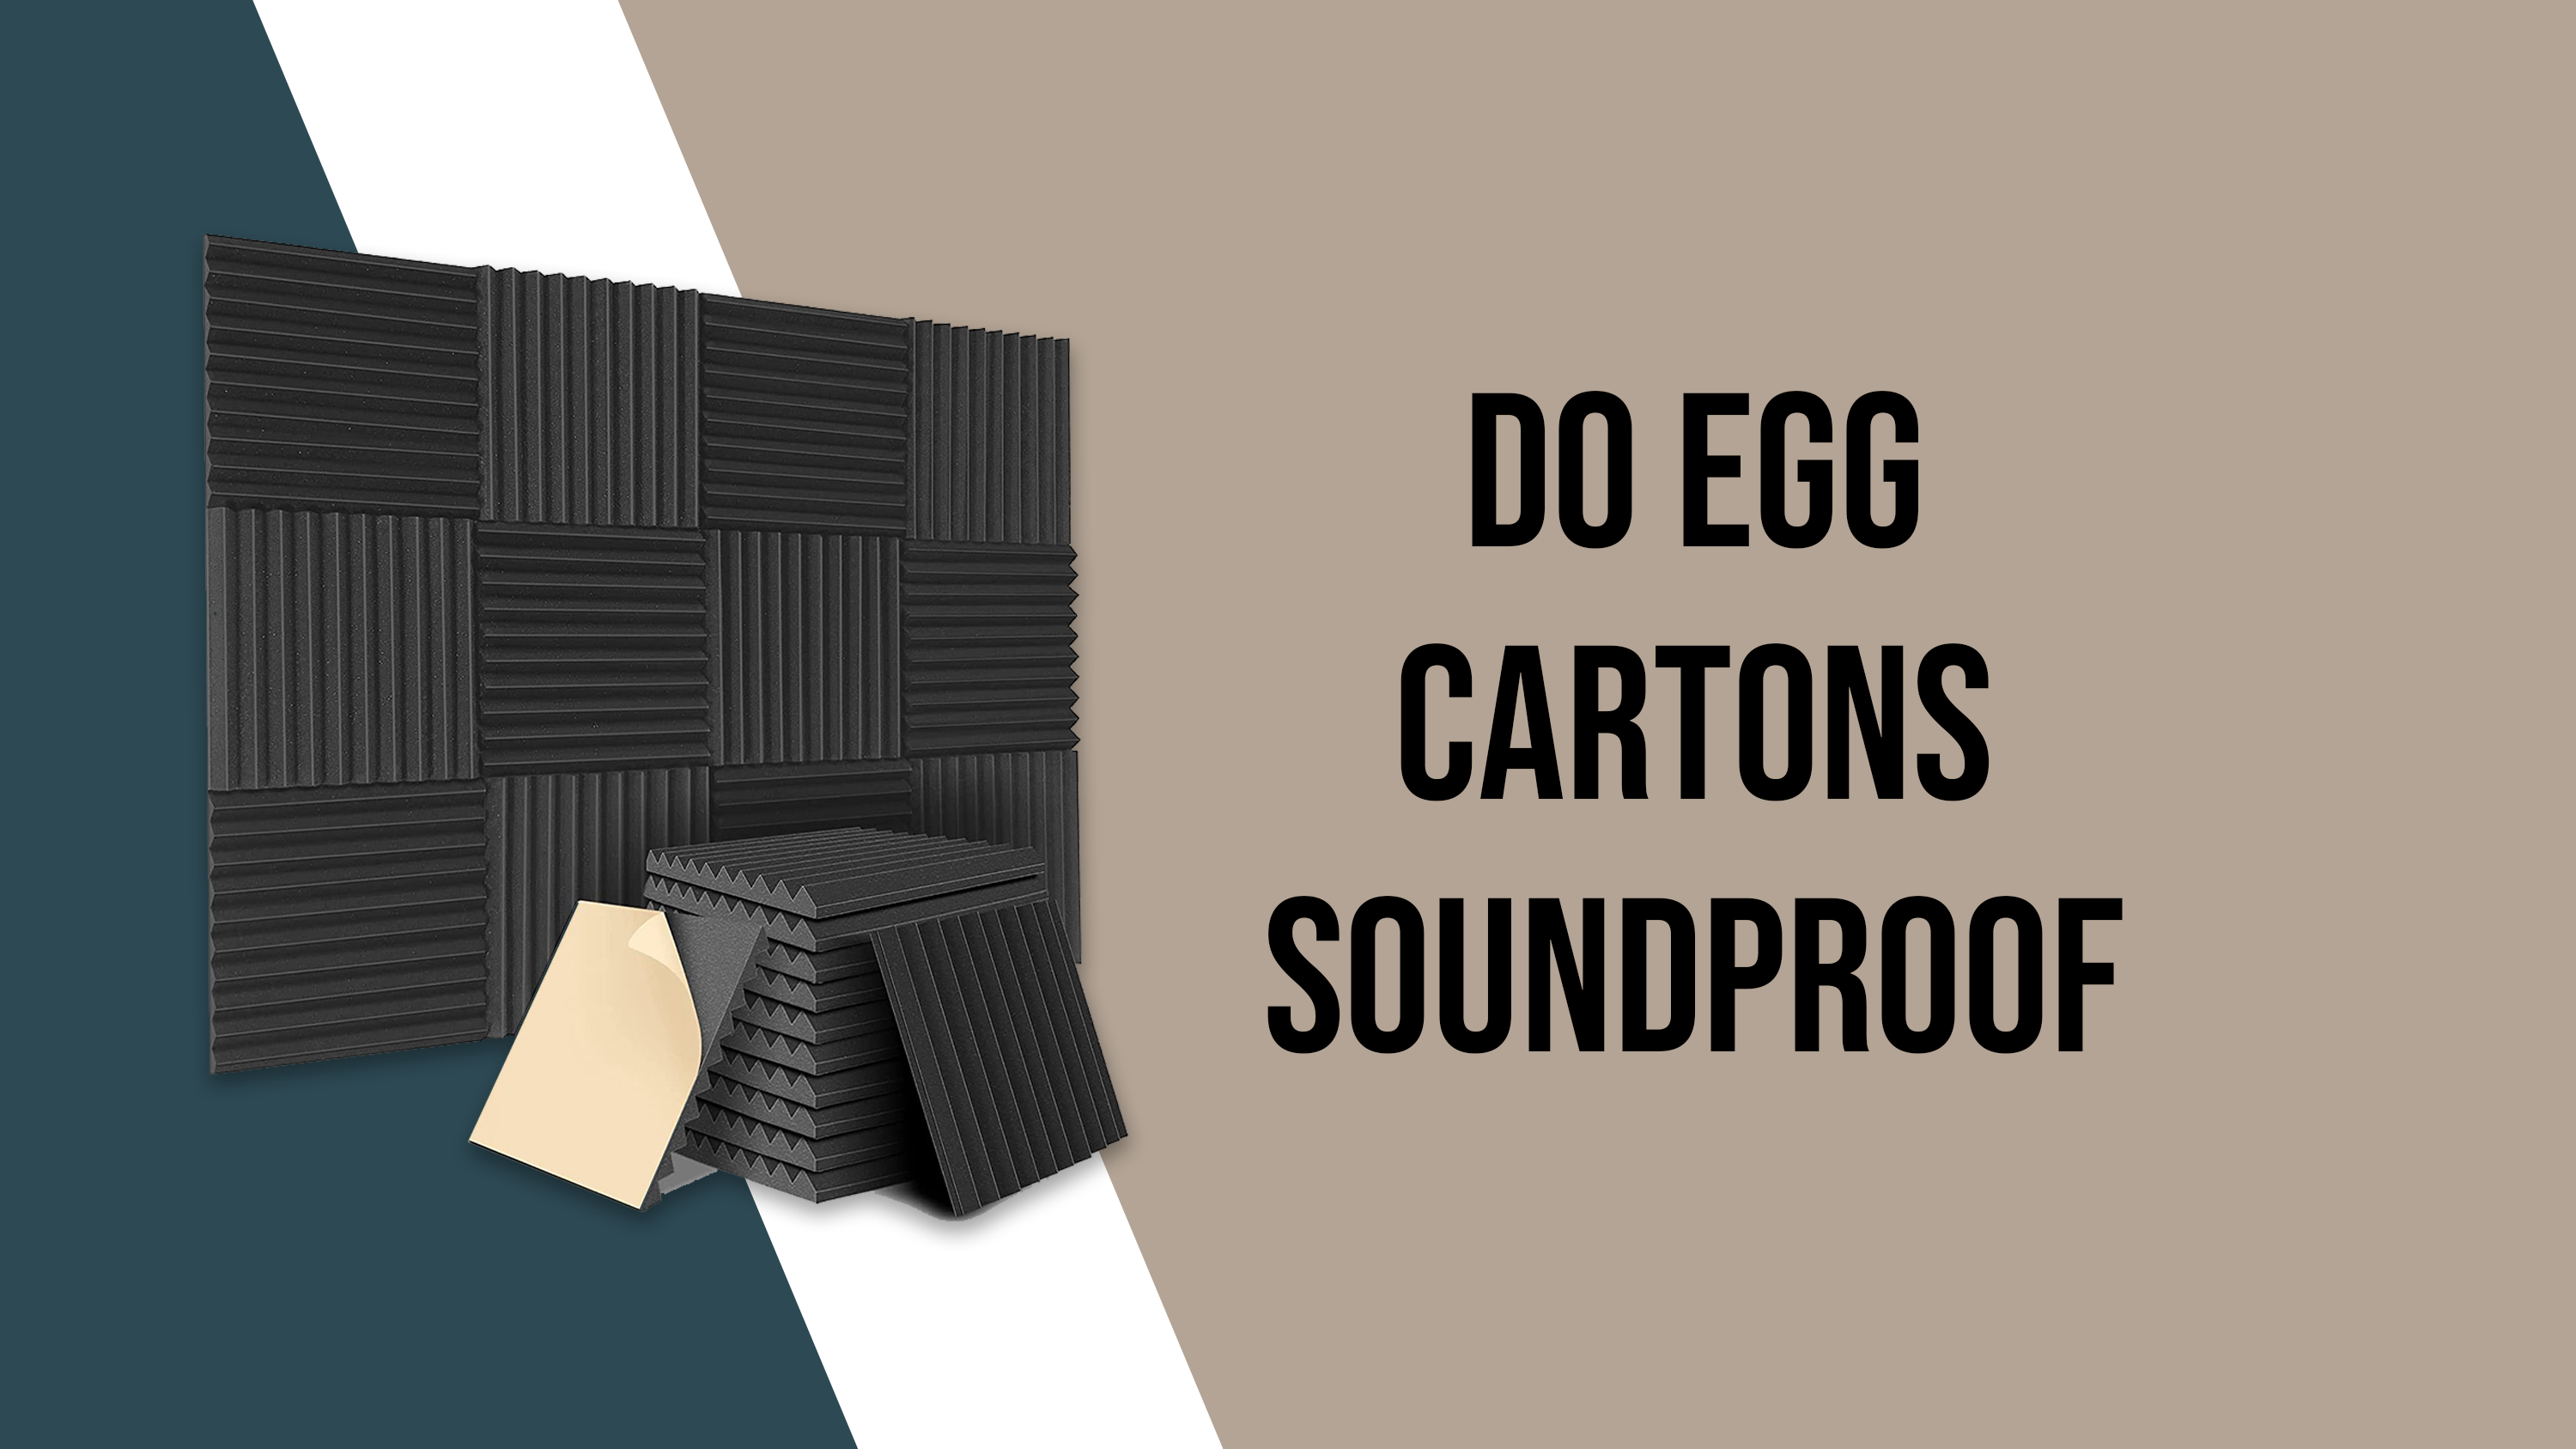 Do Egg Cartons soundproof